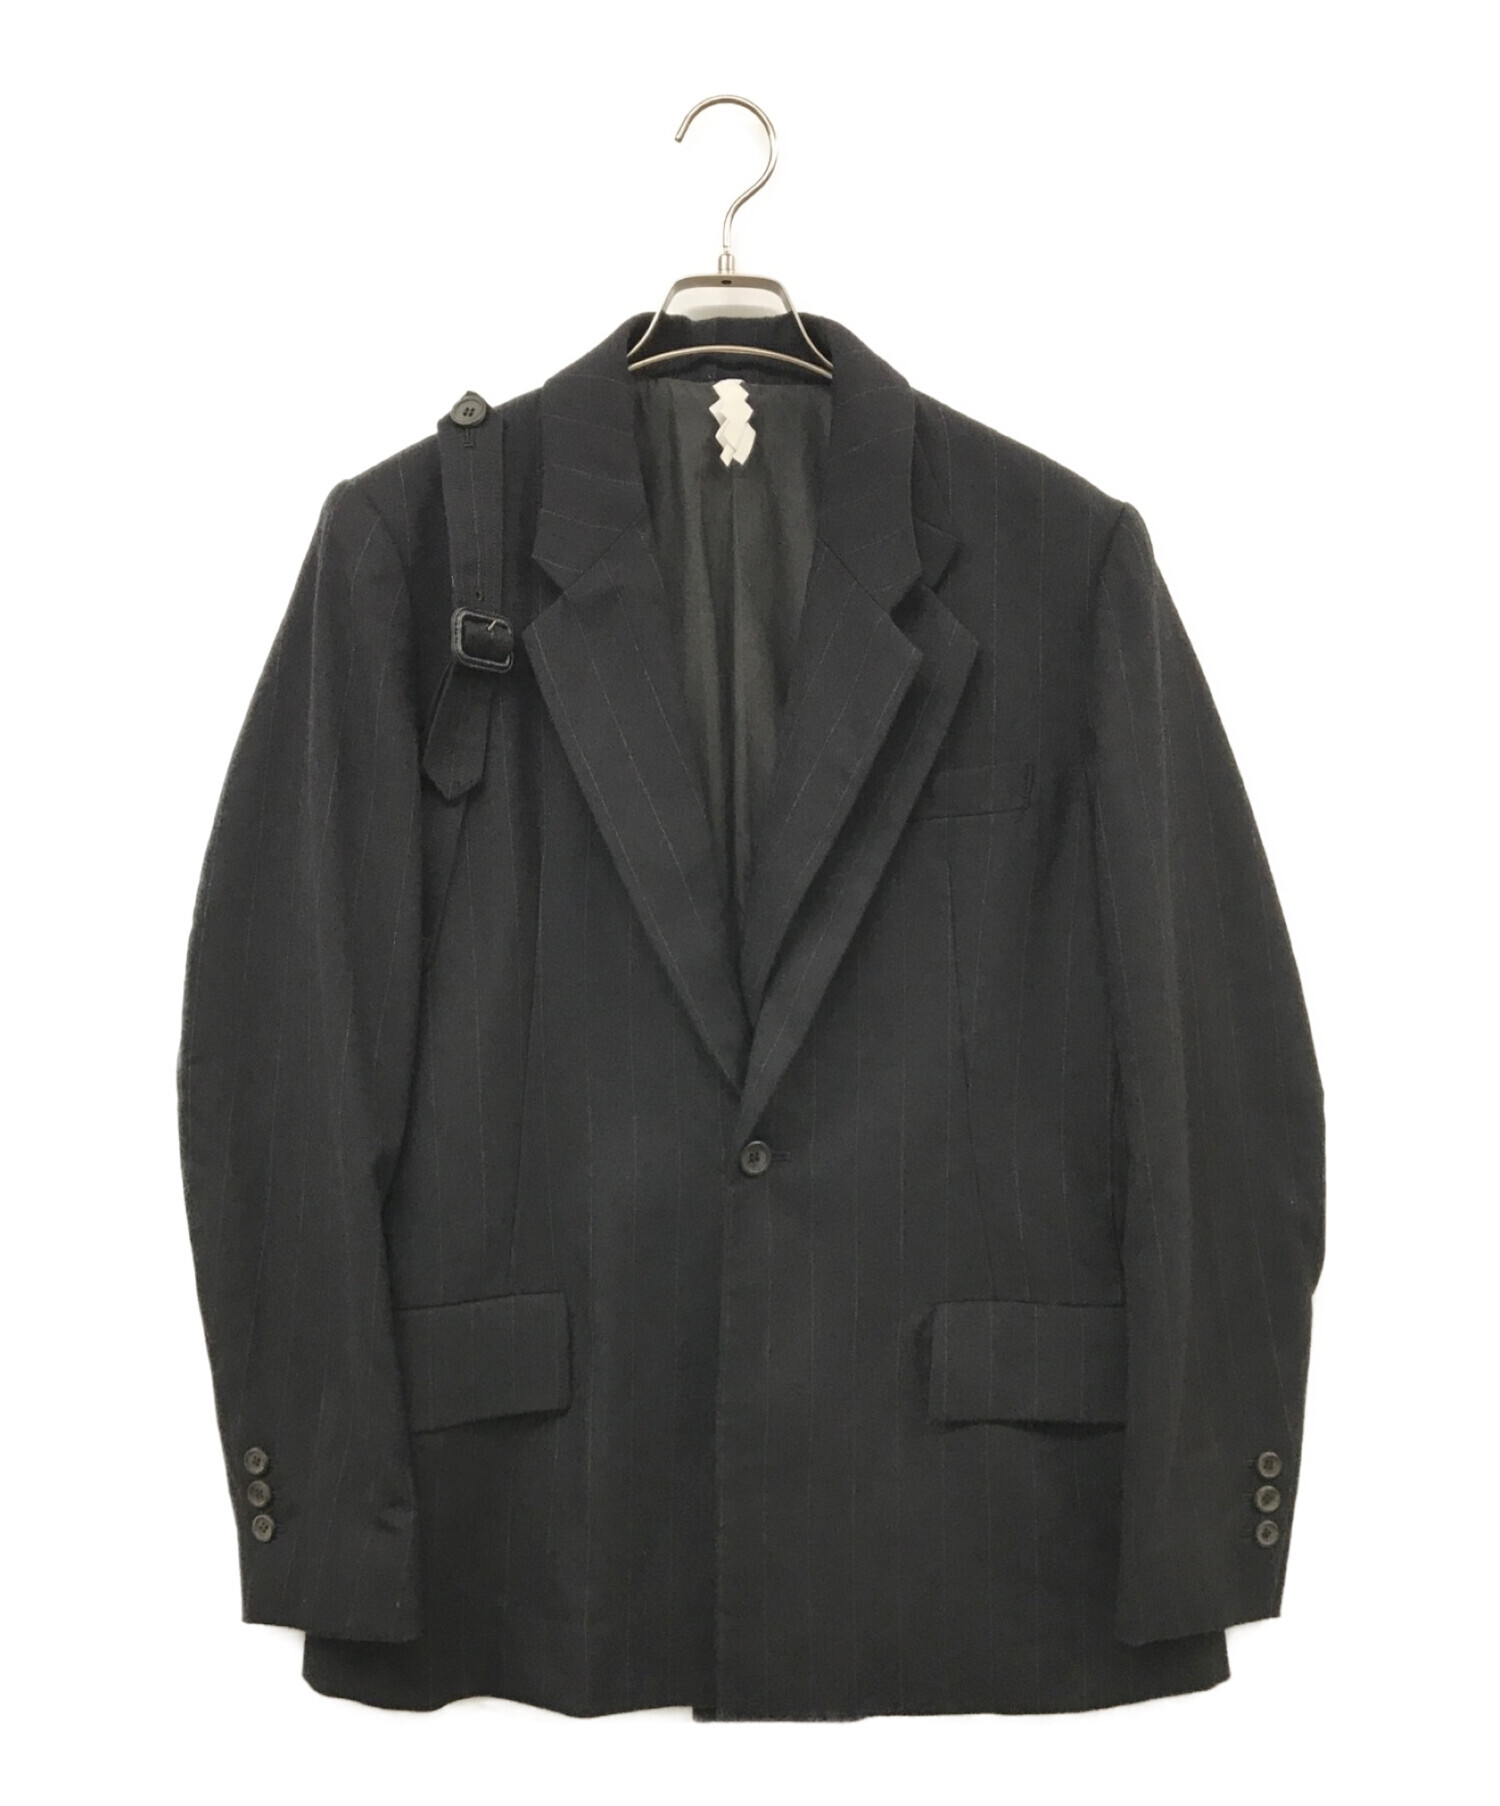 SOSHIOTSUKI (ソウシ オオツキ) HANGING SUITS テーラード ジャケット ブラック サイズ:44